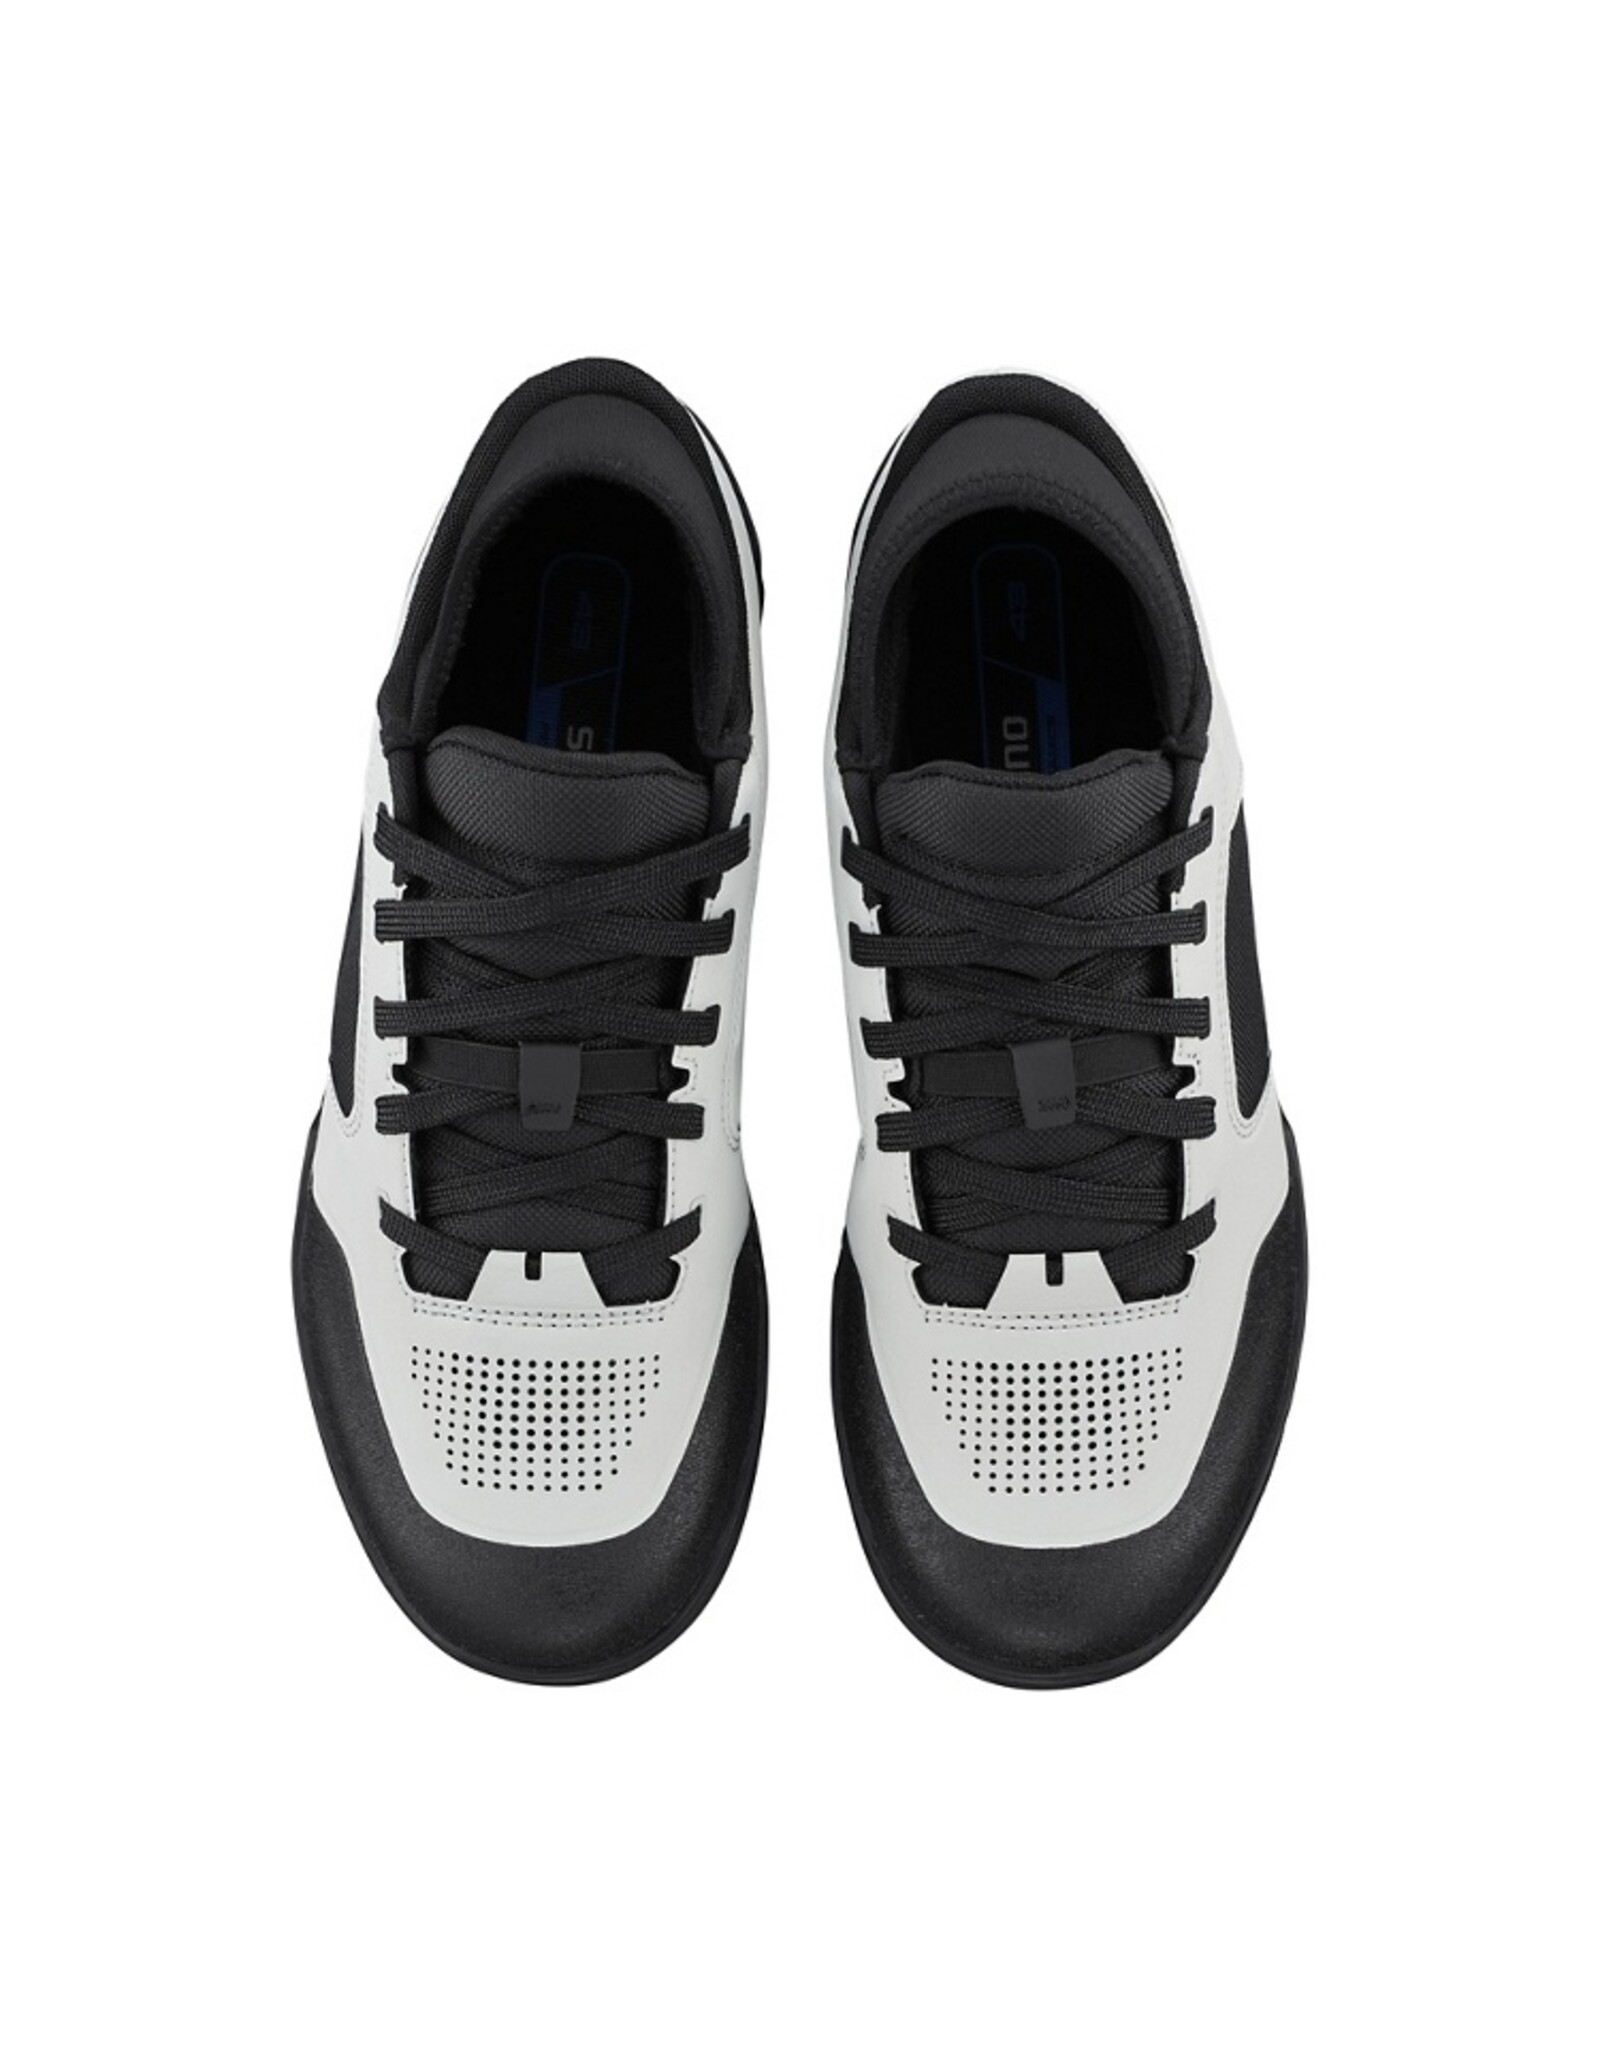 Shimano GR903 Flat Shoe